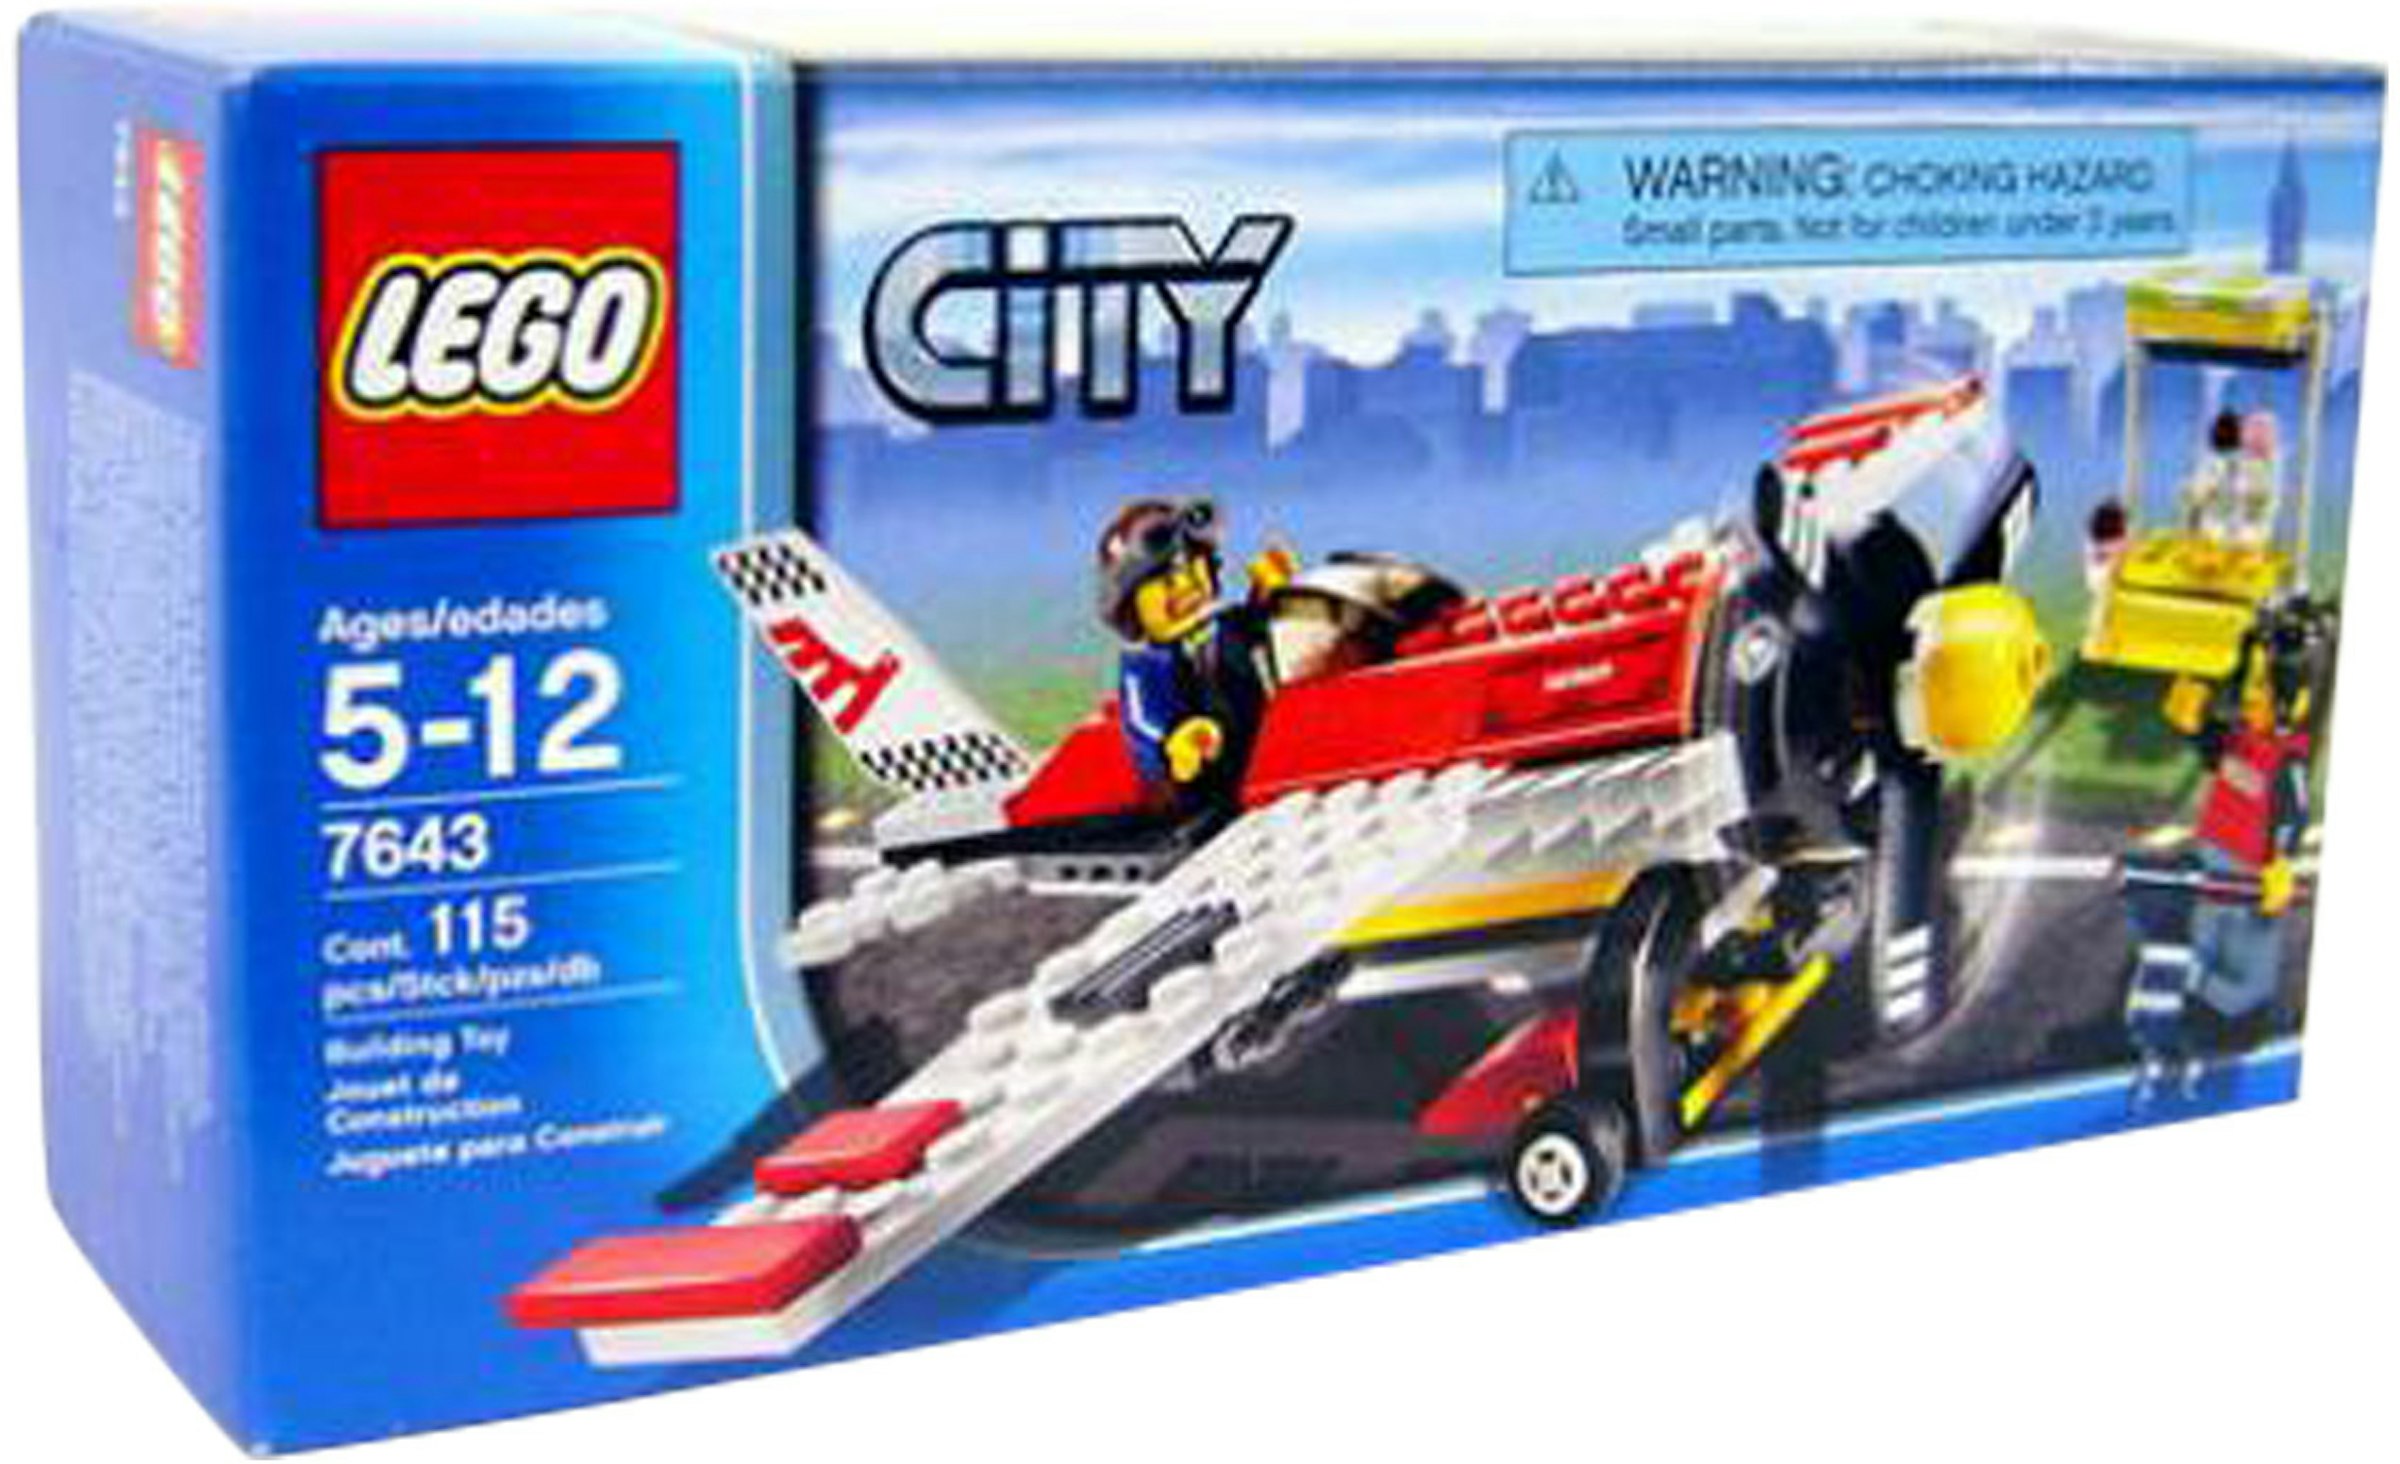 LEGO Air Show Plane Set 7643 - US